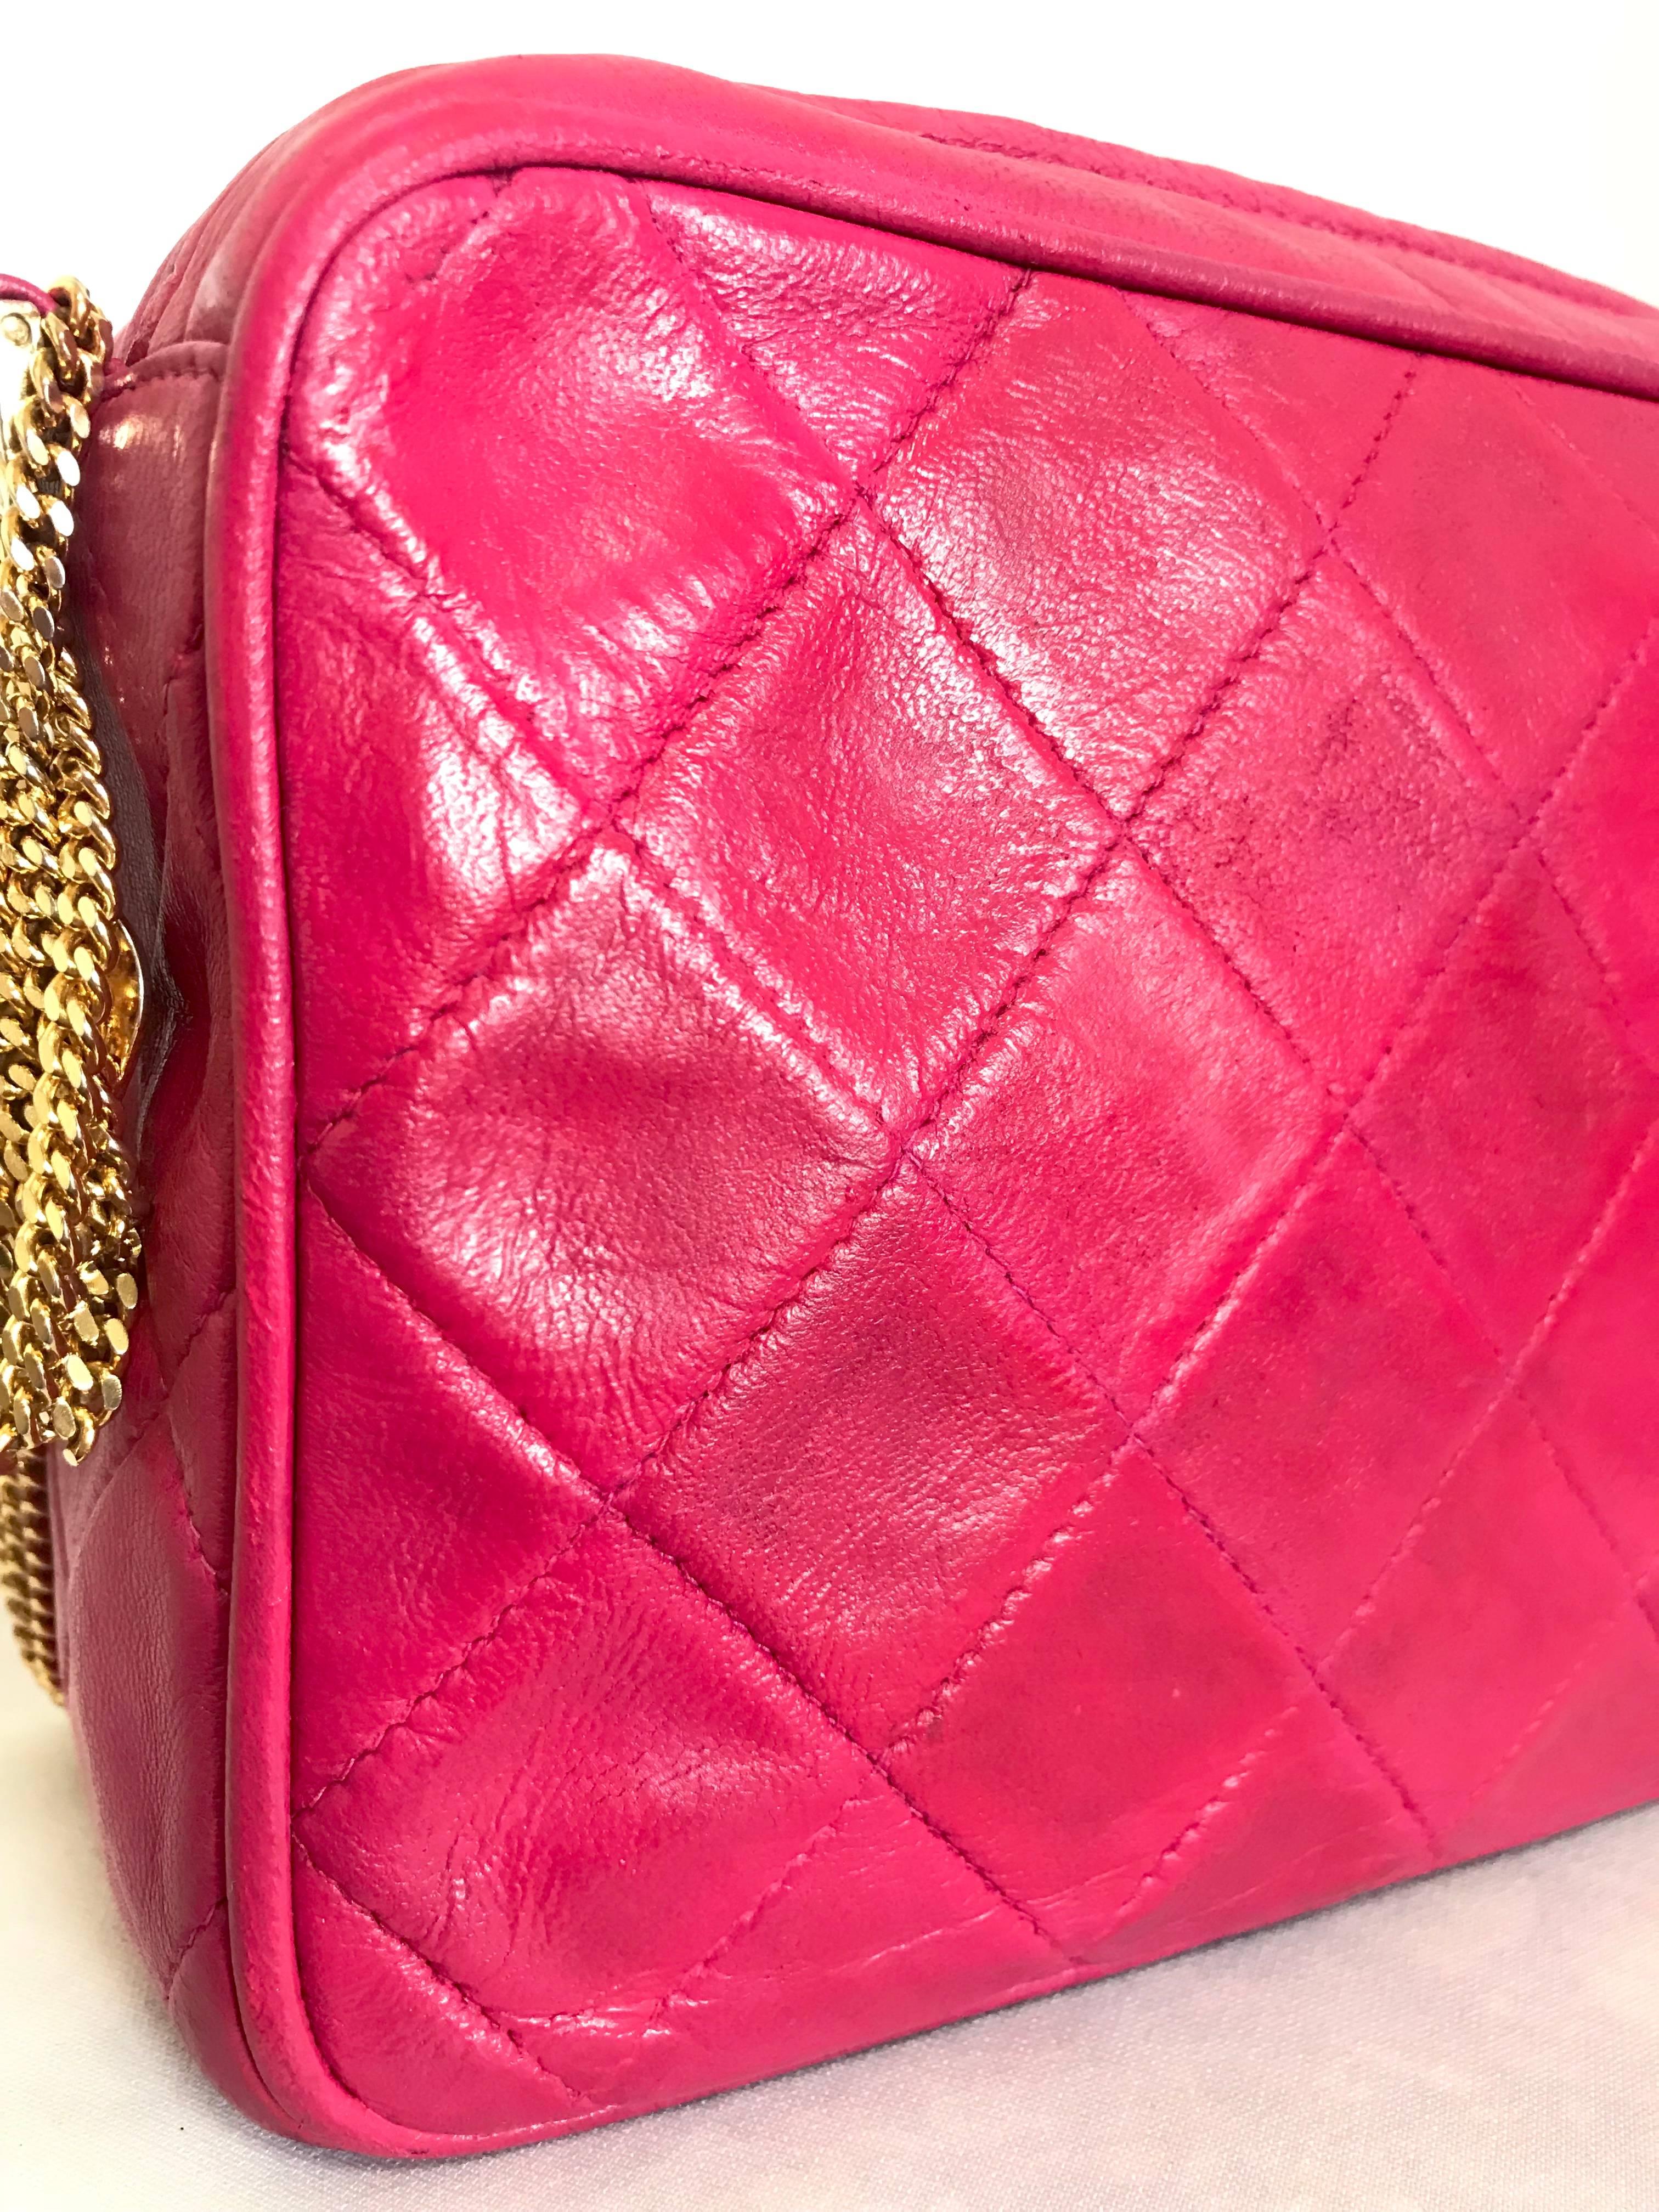 Chanel CC pink leather camera bag style Vintage shoulder bag with tassel  For Sale 5